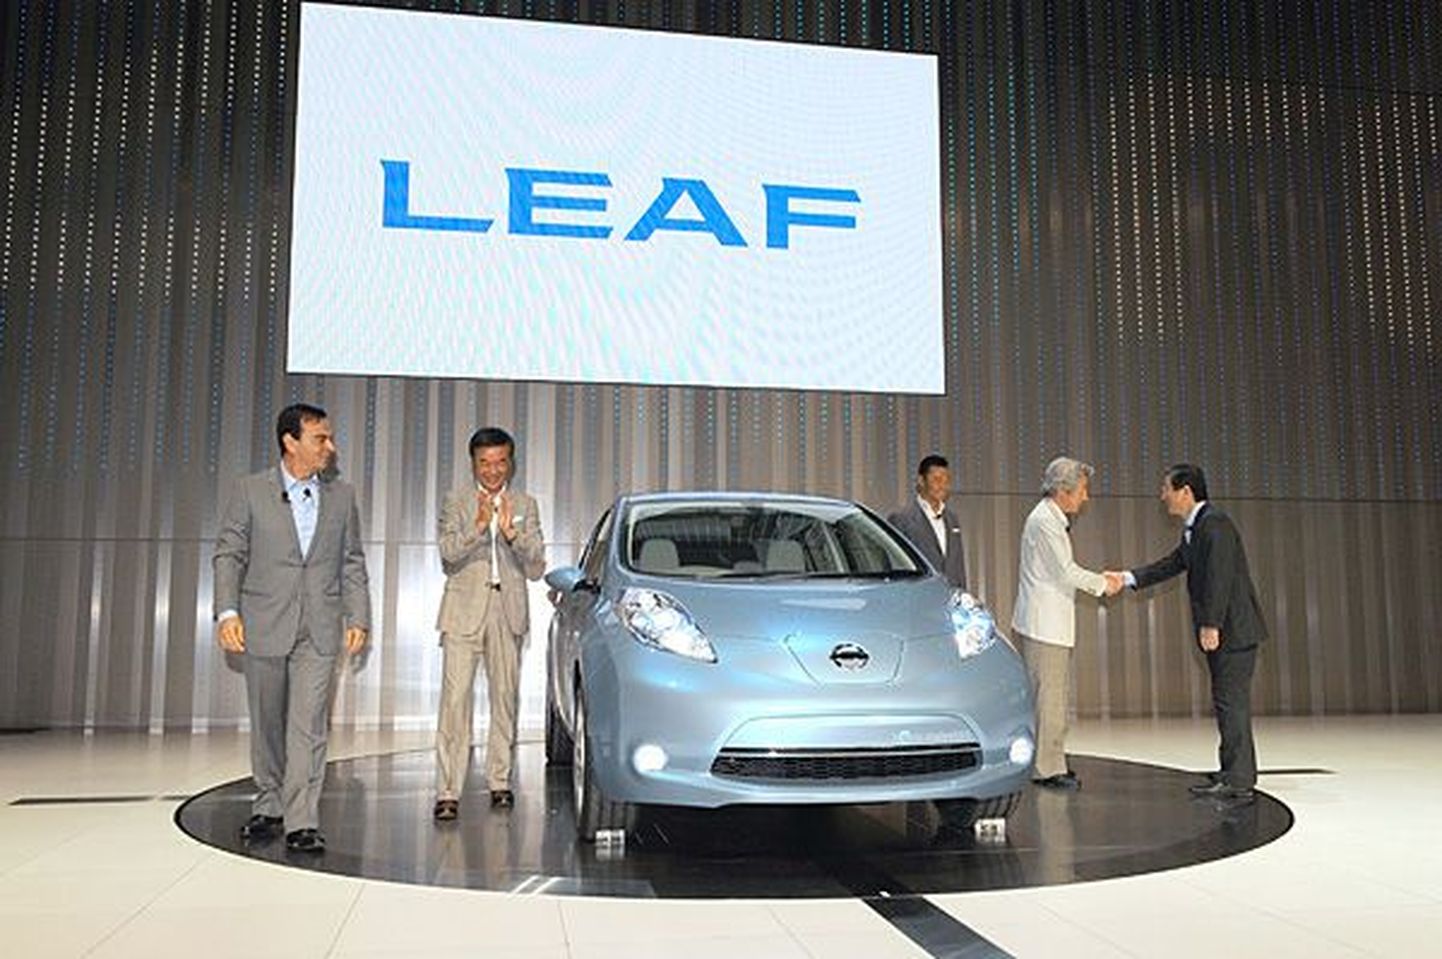 Nissan tutvustas elektriautot Leaf.